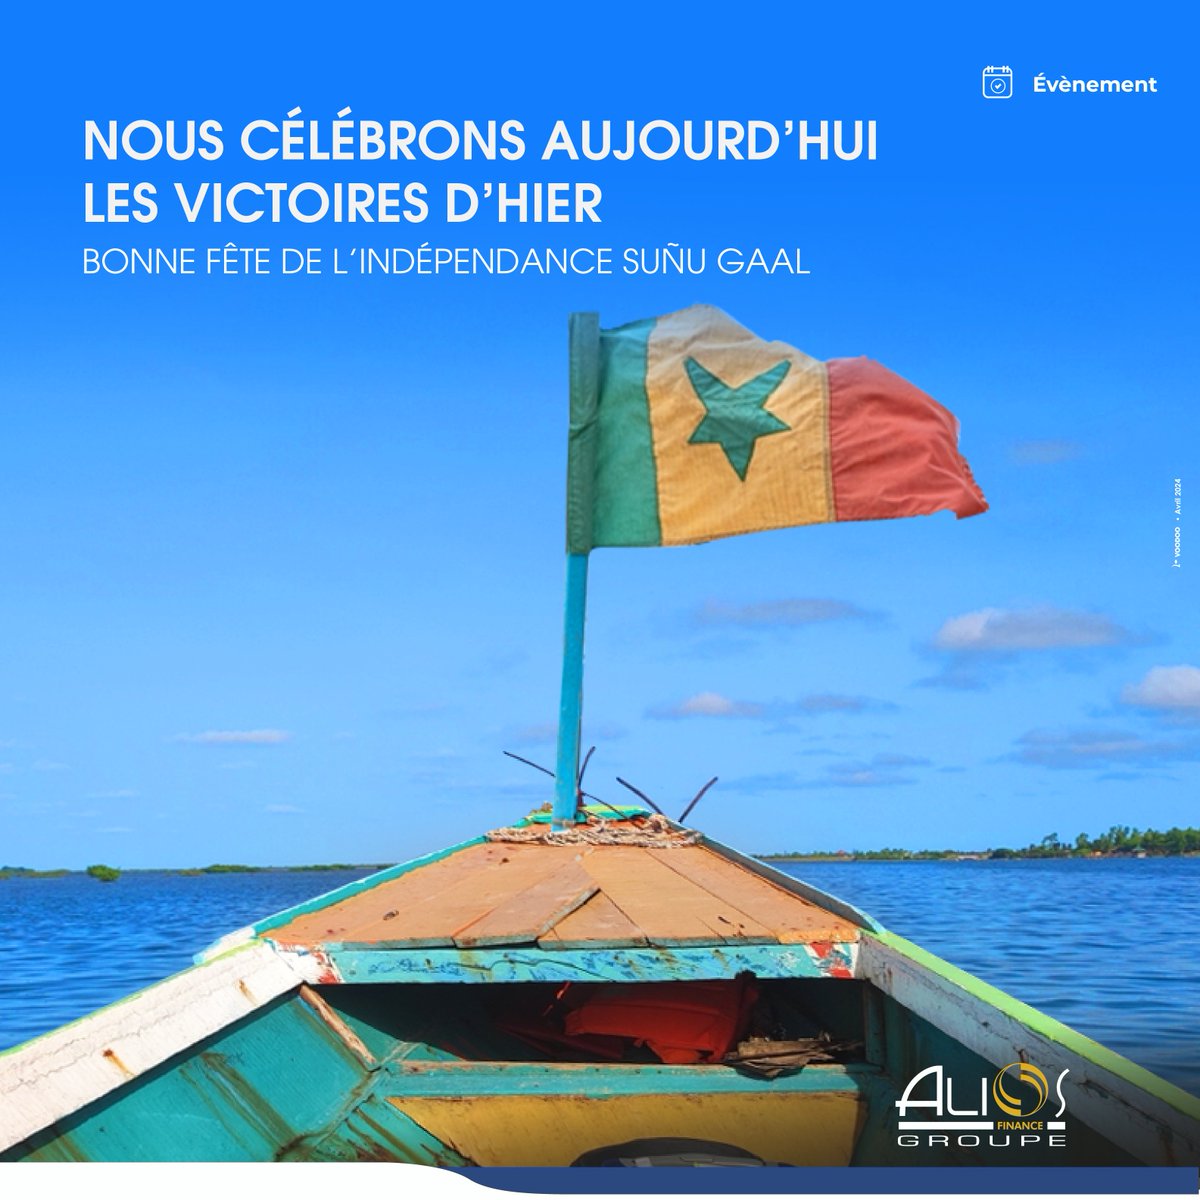 Bonne fête de l’indépendance Suñu gaal 🇸🇳

#FêteNationale #Sénégal #AliosCares